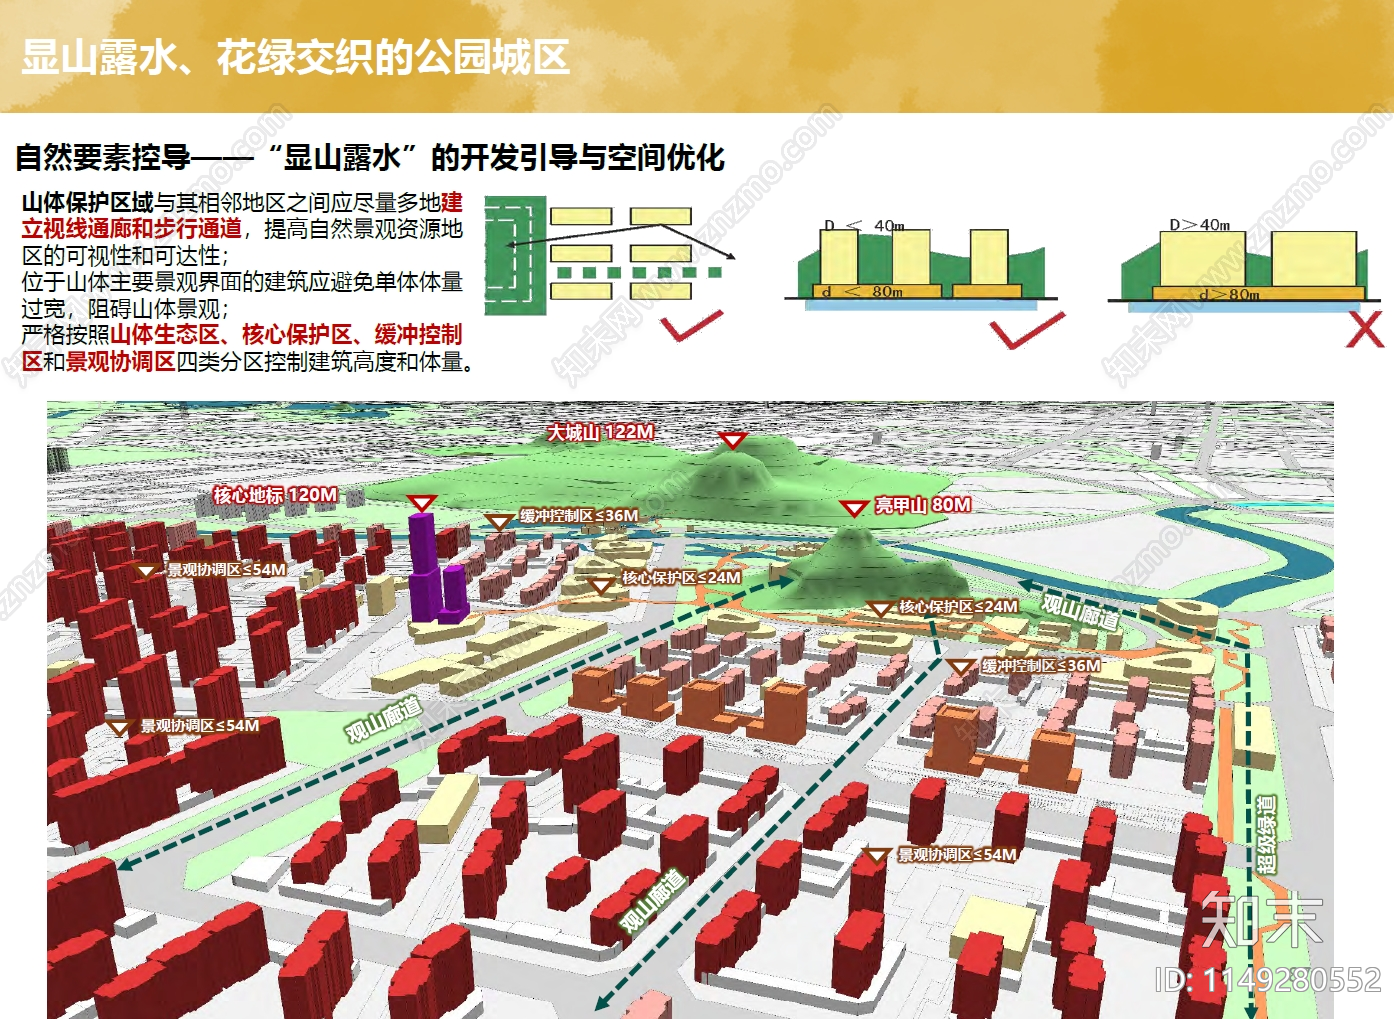 唐山钢铁概念总体规划及唐钢南区城市设计方案文本下载【ID:1149280552】